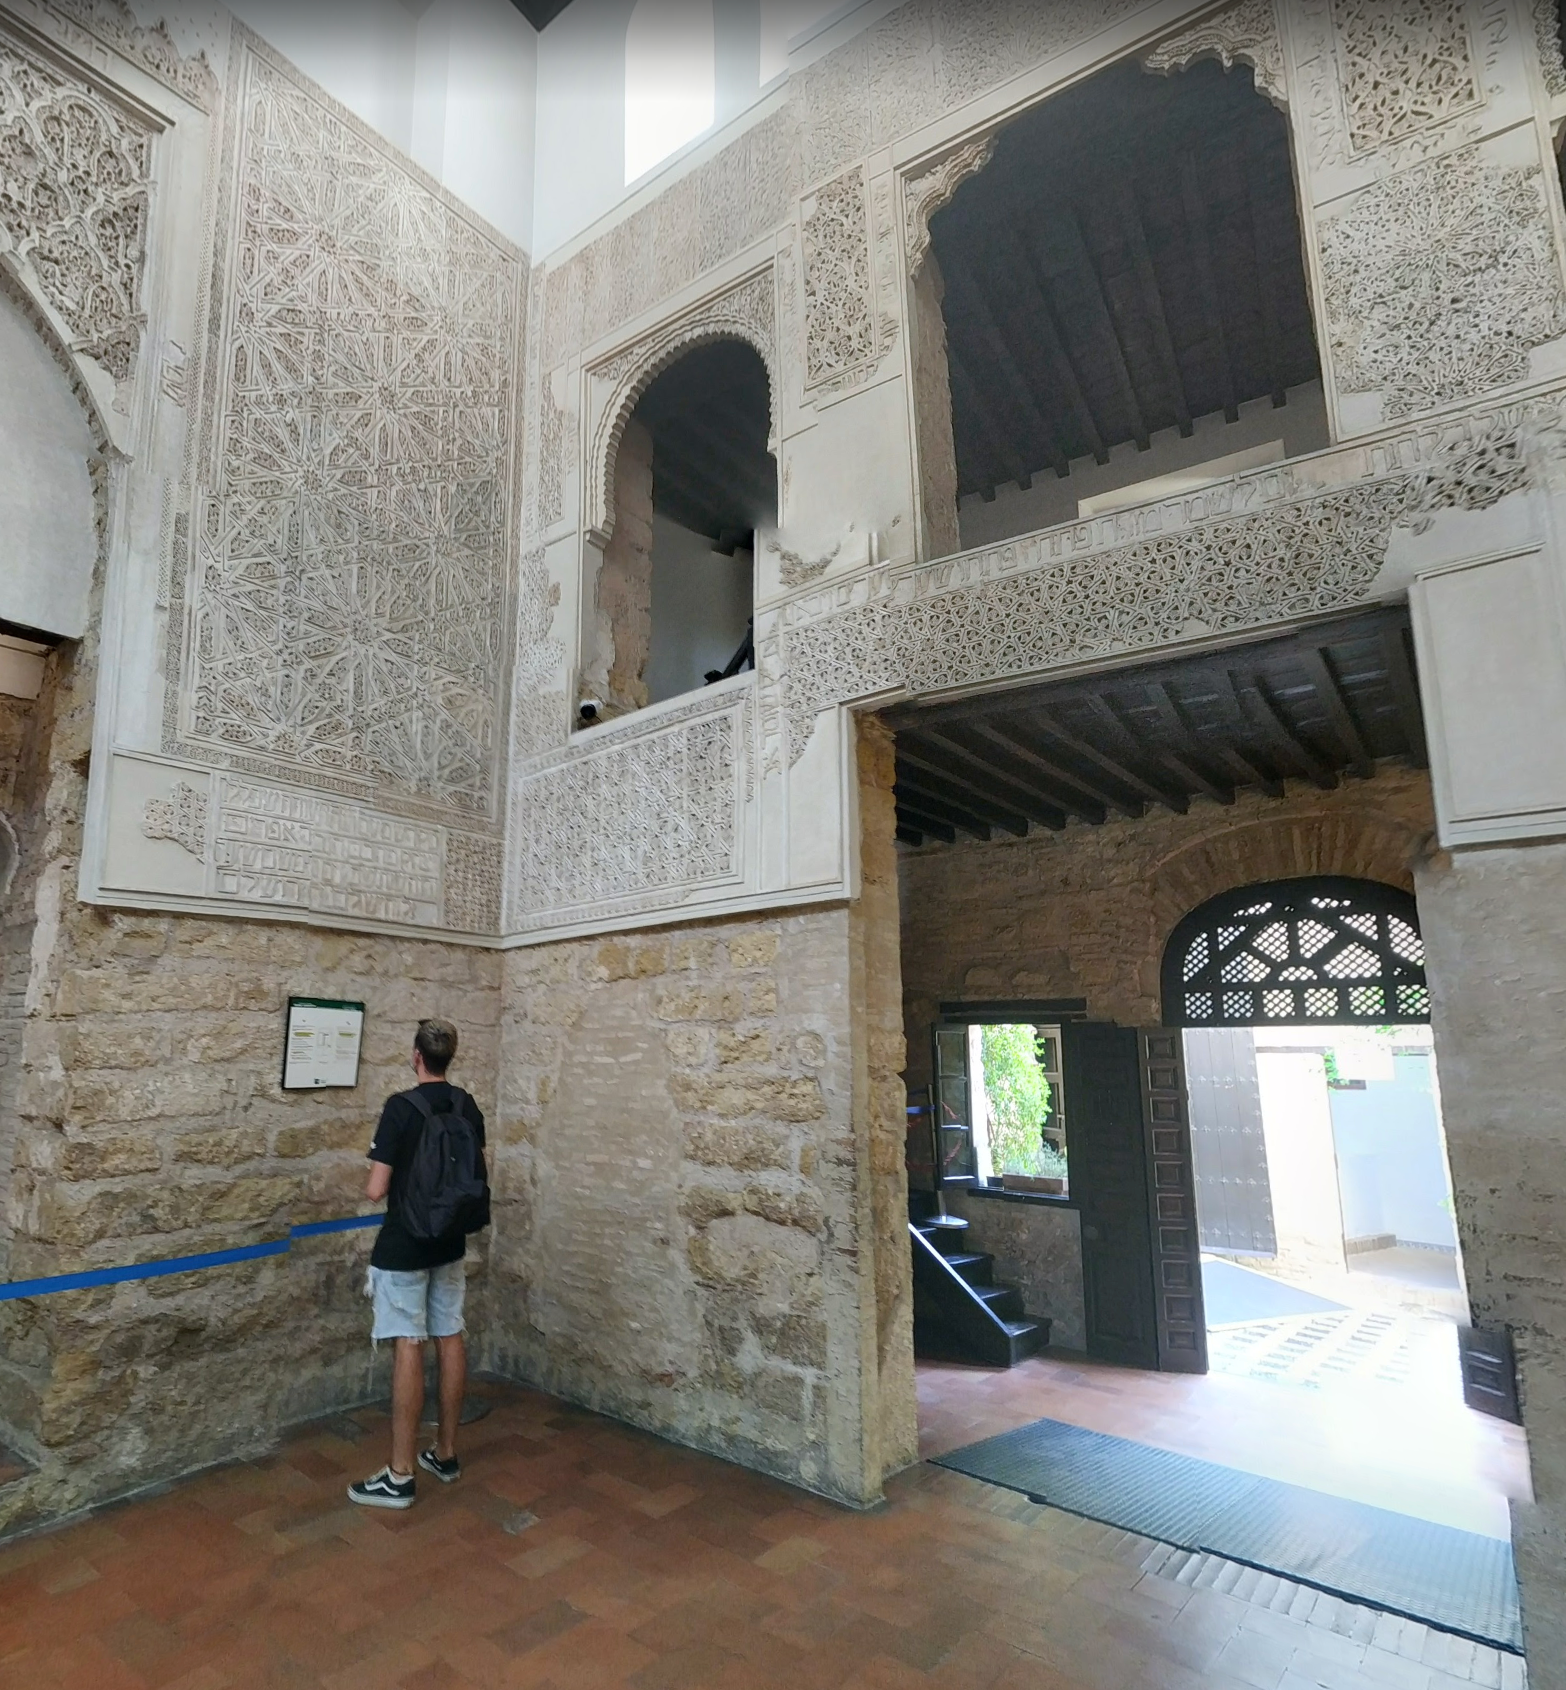 Córdoba Synagogue by Google Earth